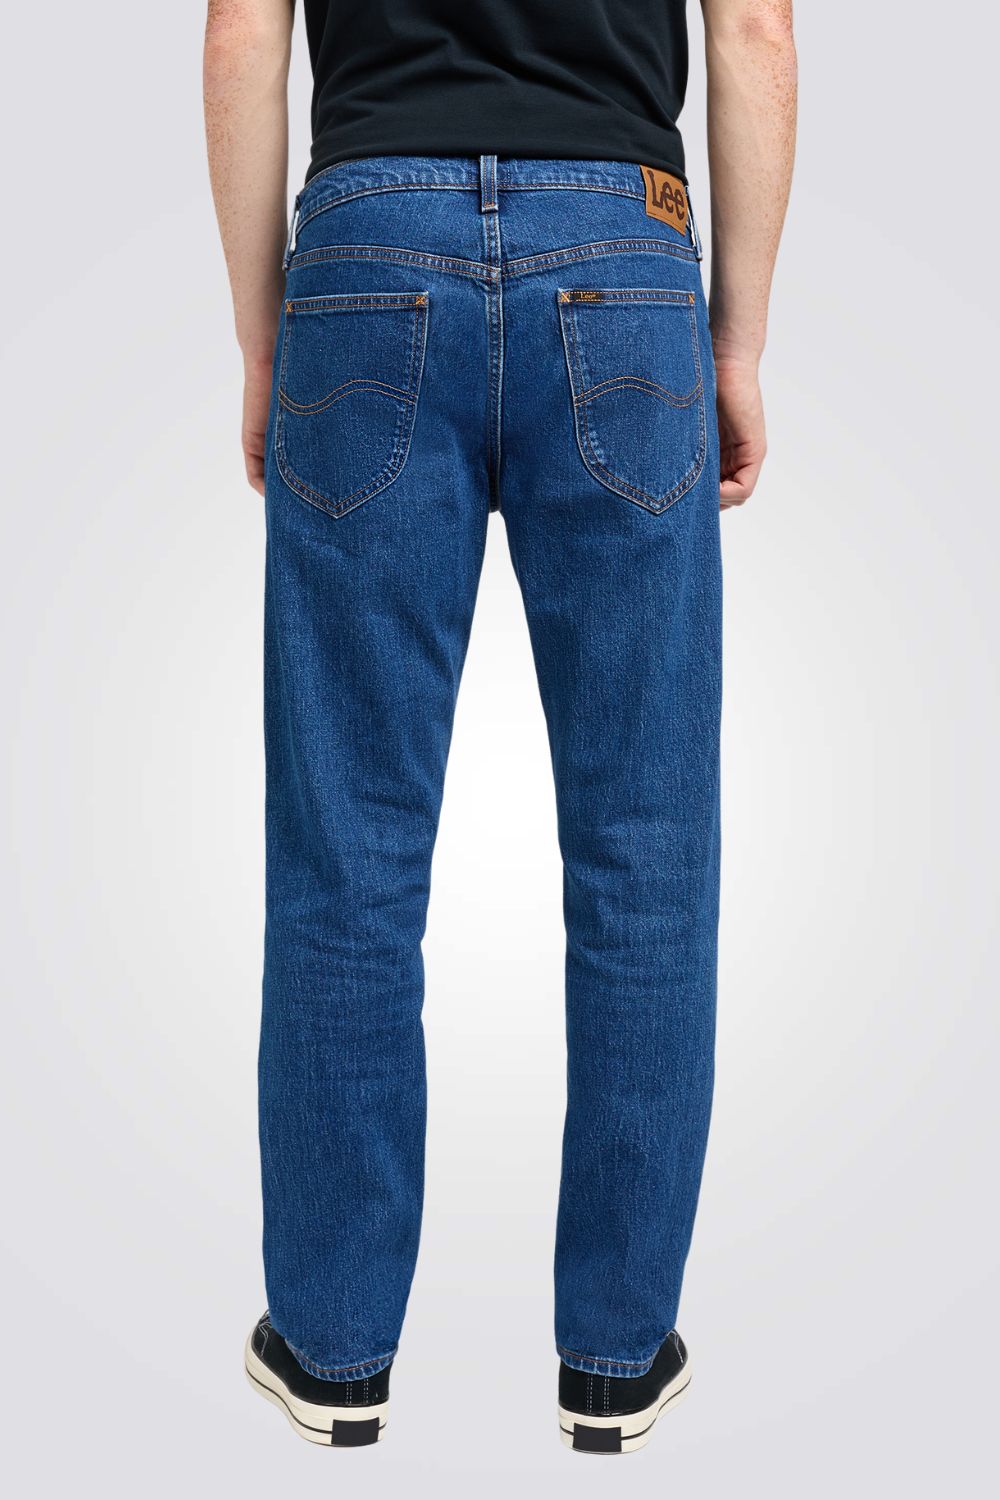 ג'ינס DARK SKYE BL בצבע כחול 